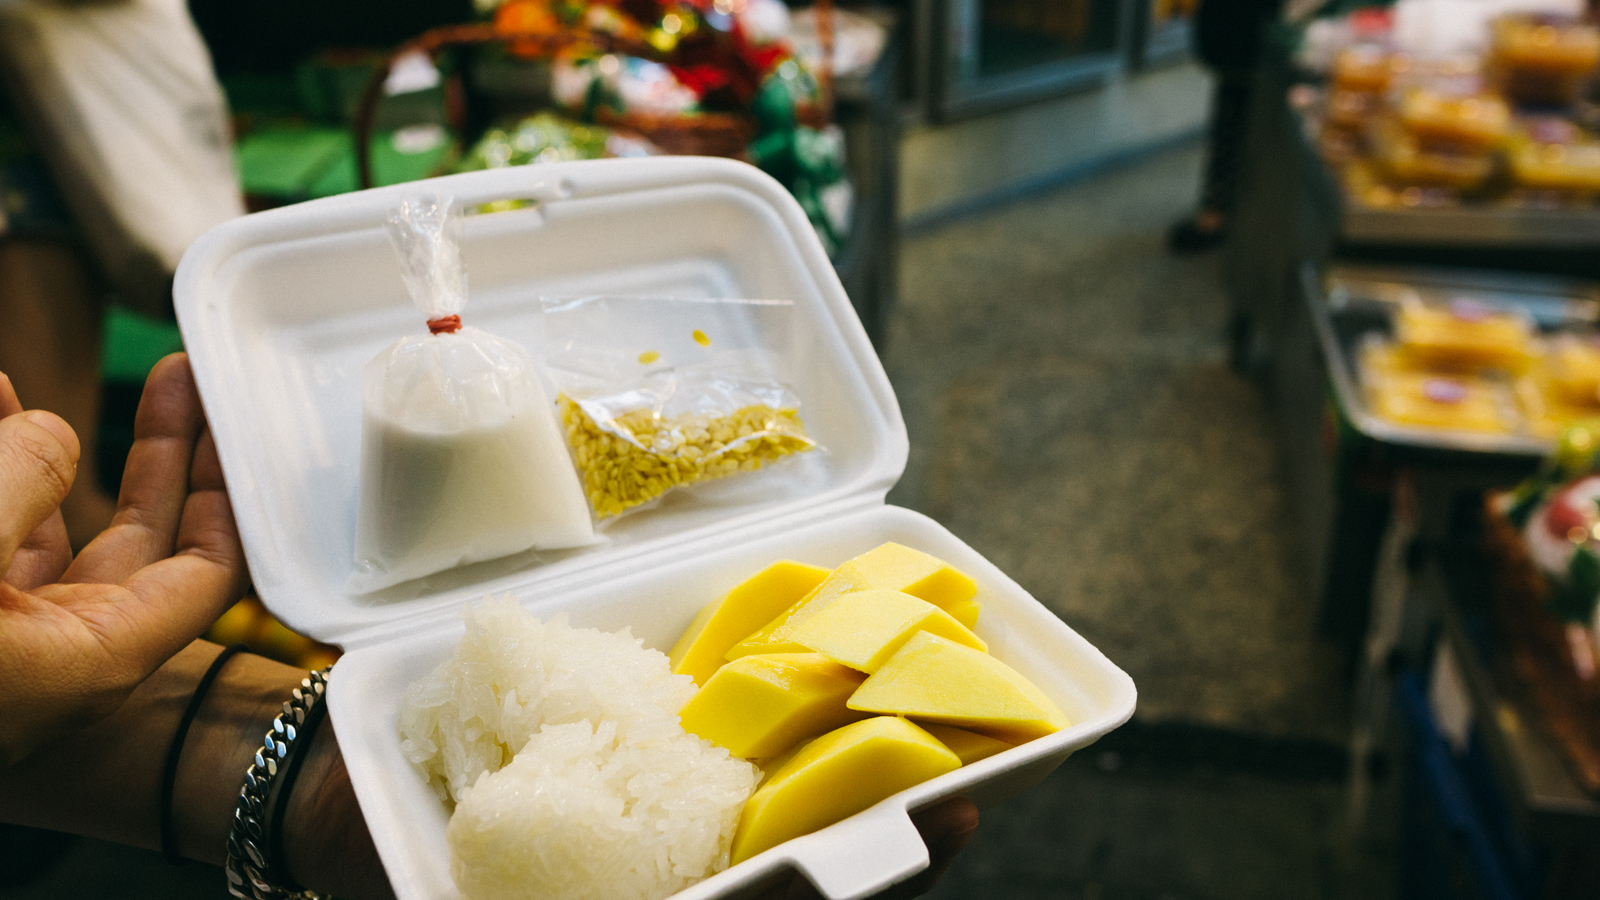 Bangkok Cray Best Mango Sticky Rice At Mae Varee Fruit Shop